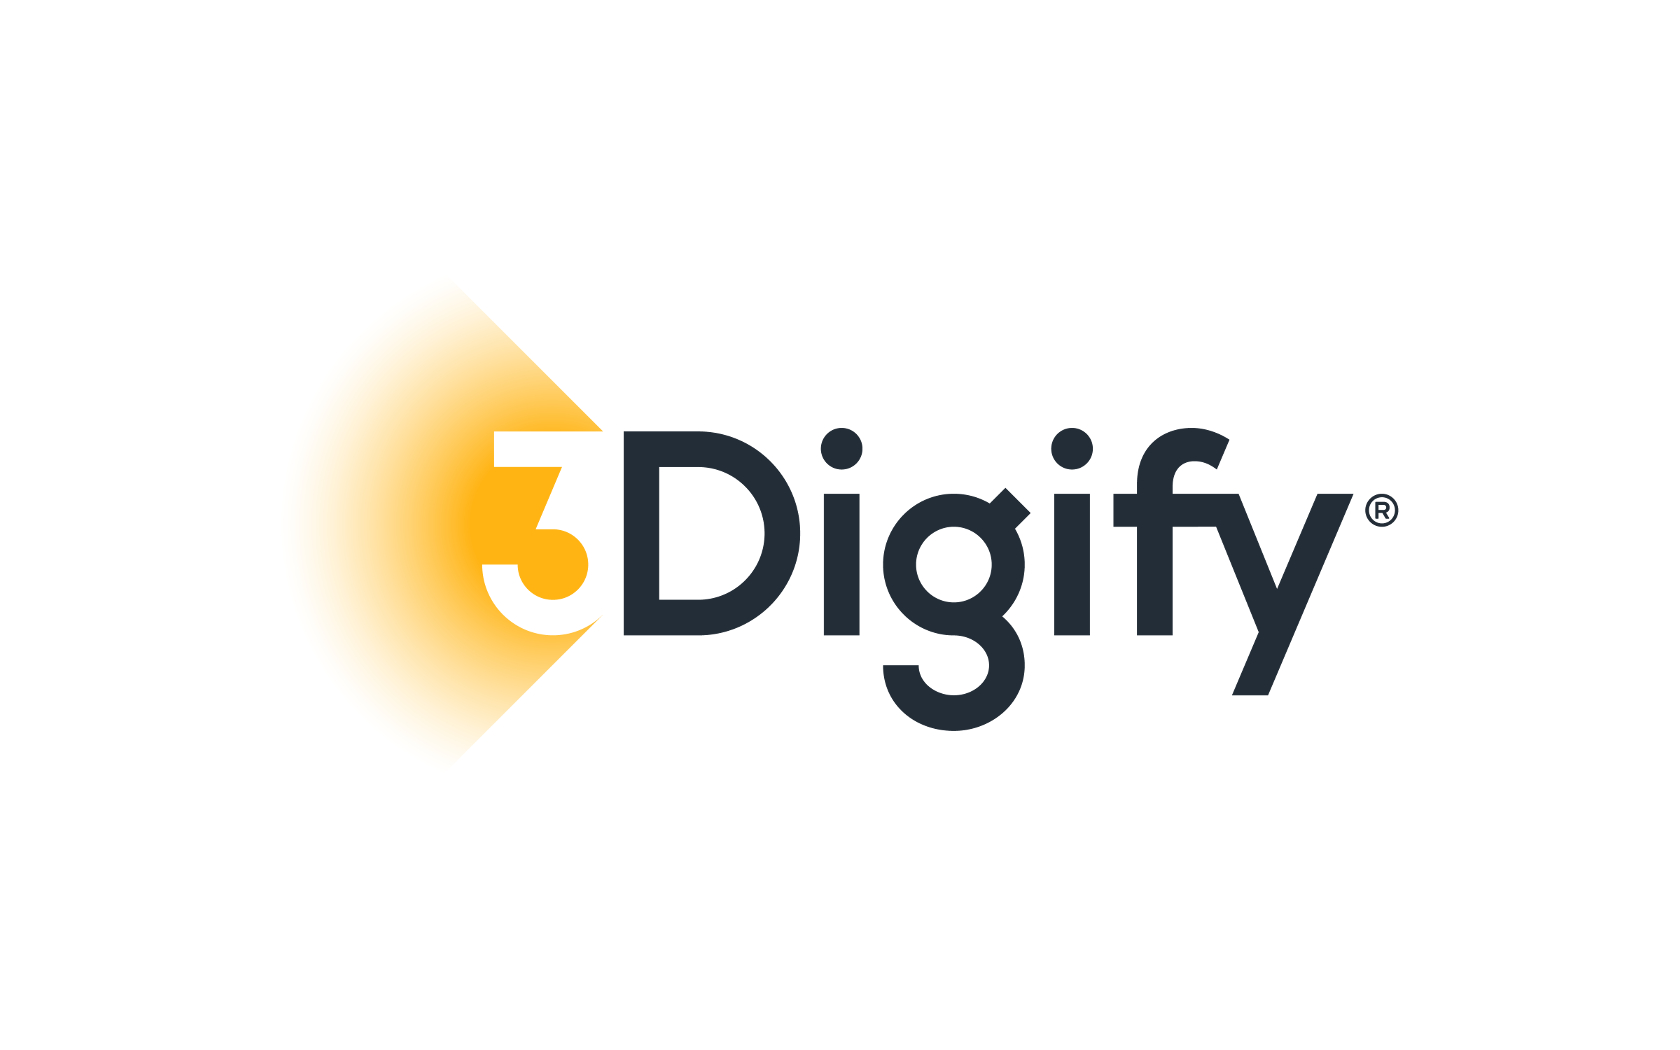 3digify